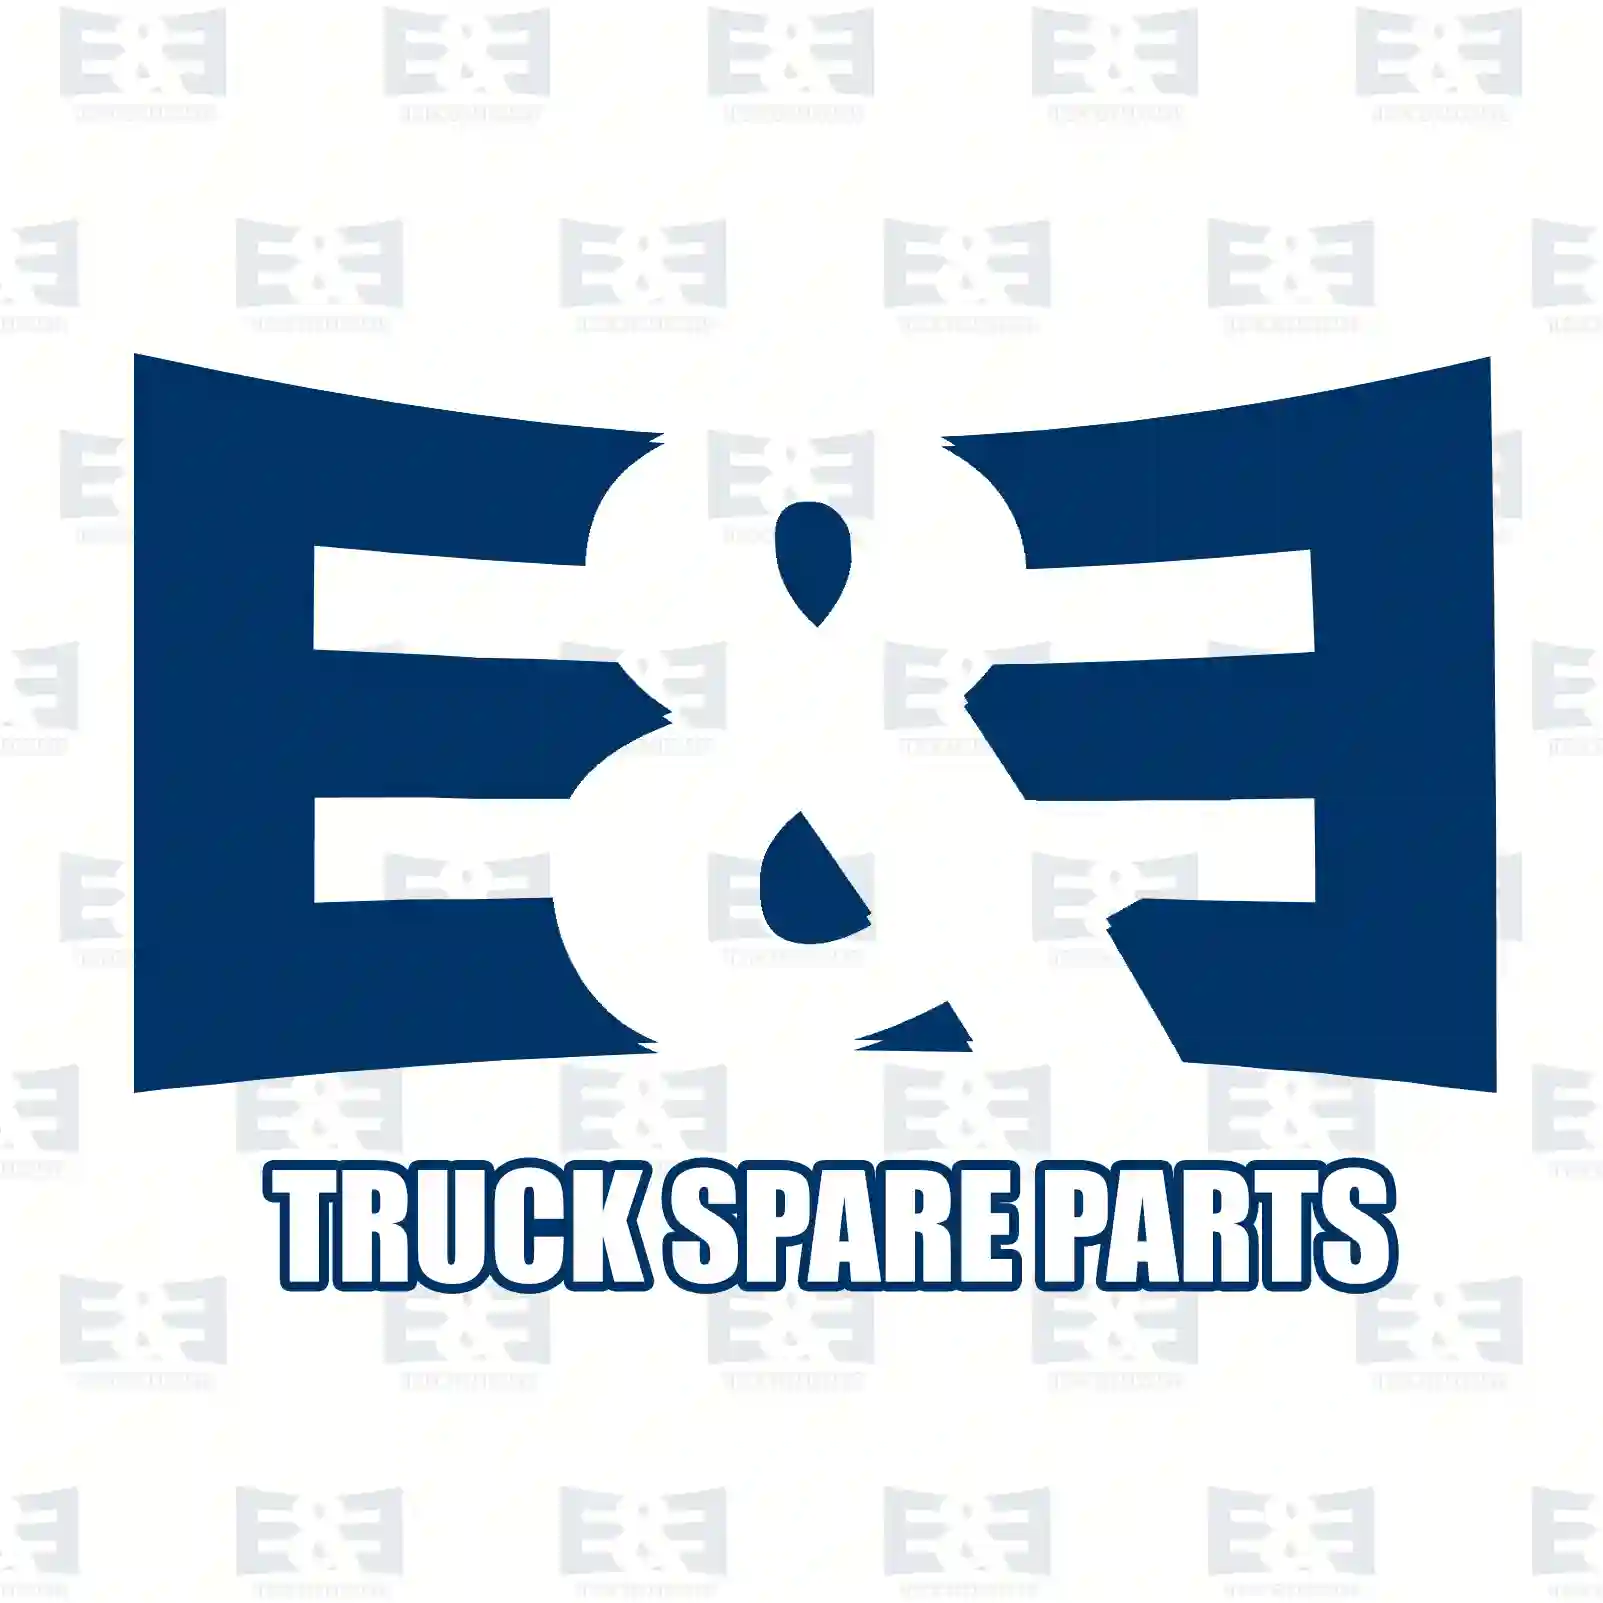 Drag link, 2E2205068, 81433116243, 81466106186, 81466116152, 81466116161, 81466116162, 81466116163, 81466116242, 82466106183, 82466106186, 82466106187 ||  2E2205068 E&E Truck Spare Parts | Truck Spare Parts, Auotomotive Spare Parts Drag link, 2E2205068, 81433116243, 81466106186, 81466116152, 81466116161, 81466116162, 81466116163, 81466116242, 82466106183, 82466106186, 82466106187 ||  2E2205068 E&E Truck Spare Parts | Truck Spare Parts, Auotomotive Spare Parts